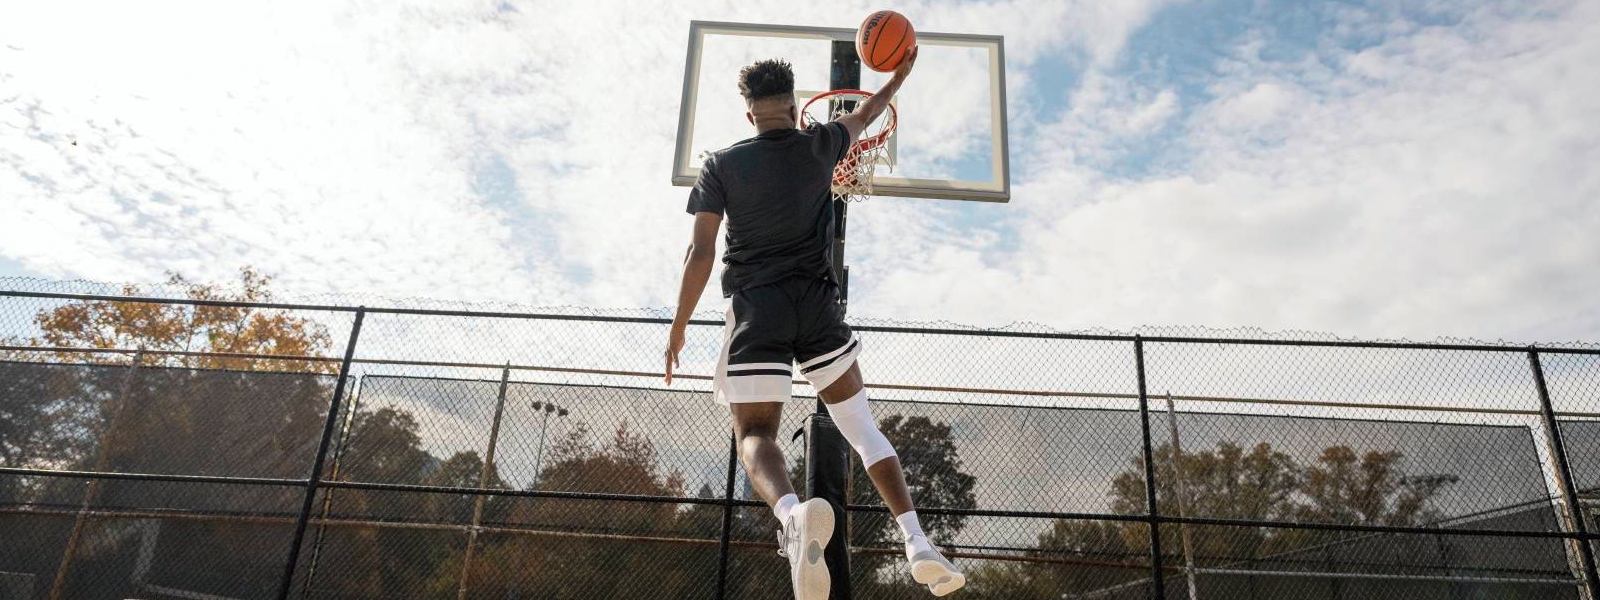 Basketballspieler springt auf einem Freiplatz zum Korb und trägt dabei eine weiße Kniebandage